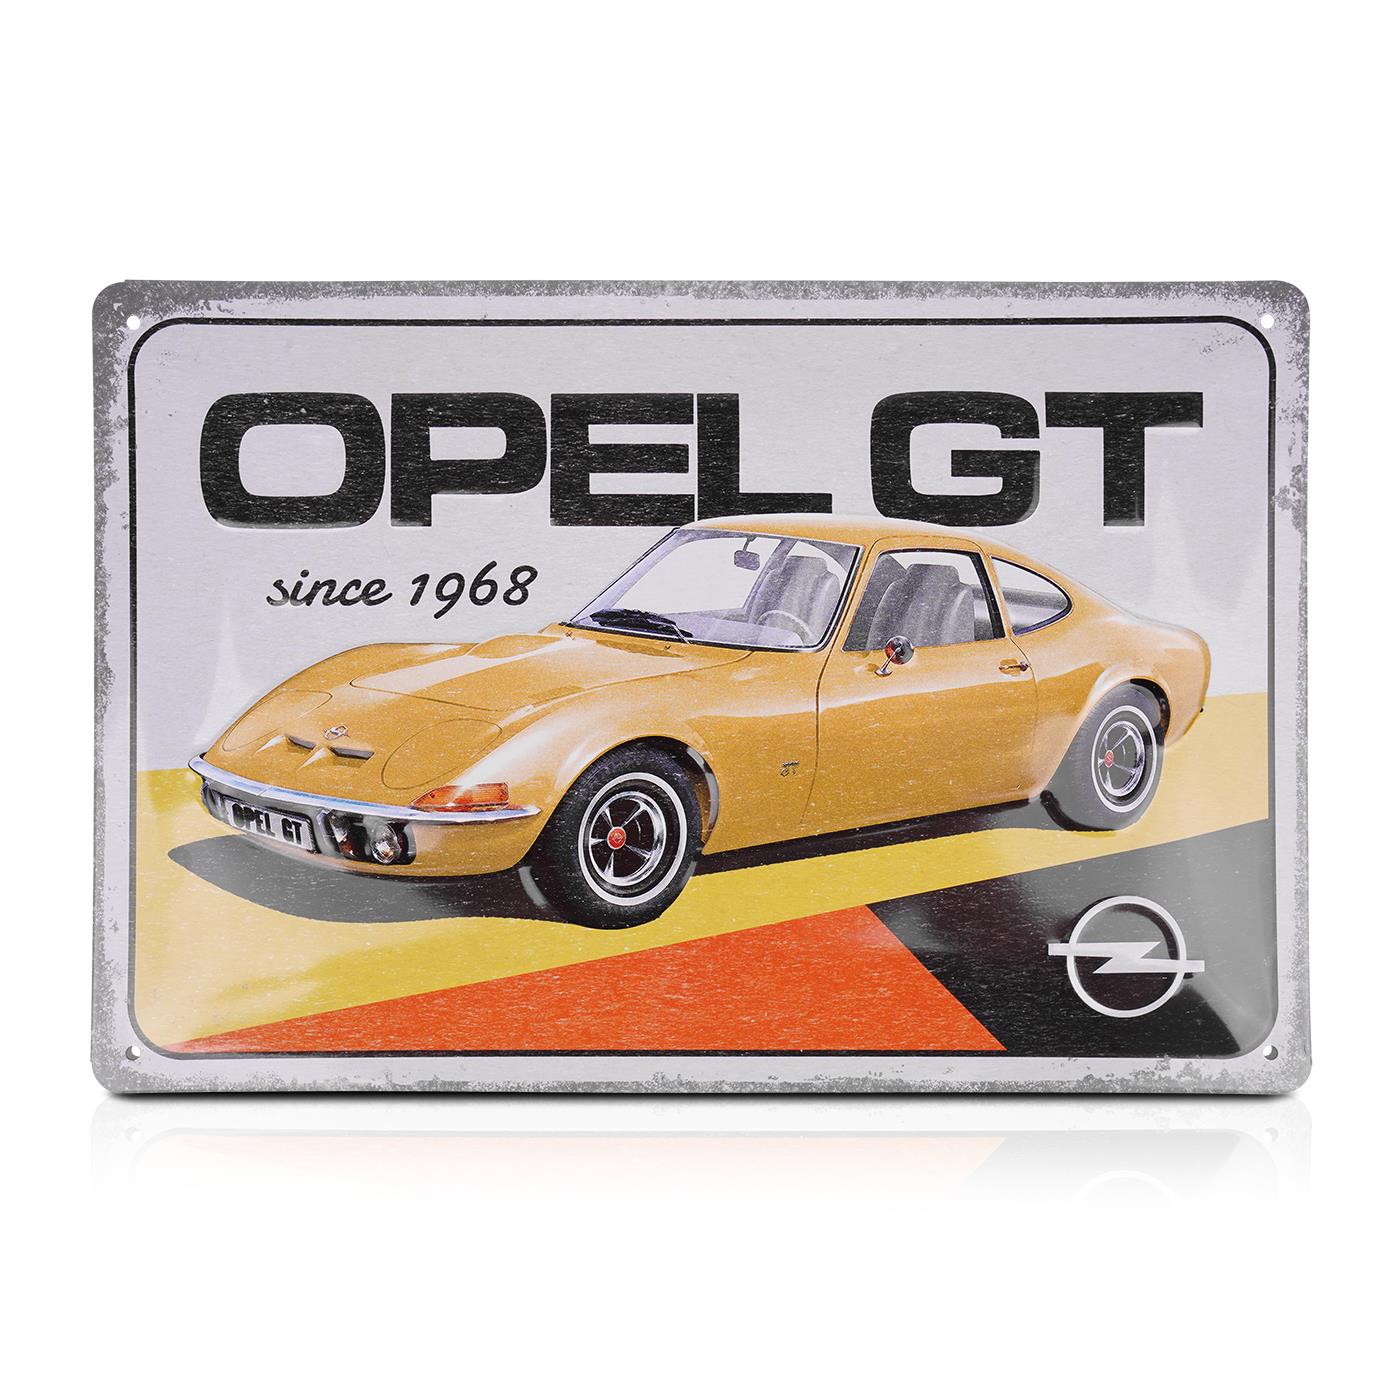 Blechschild OPEL GT since 1968